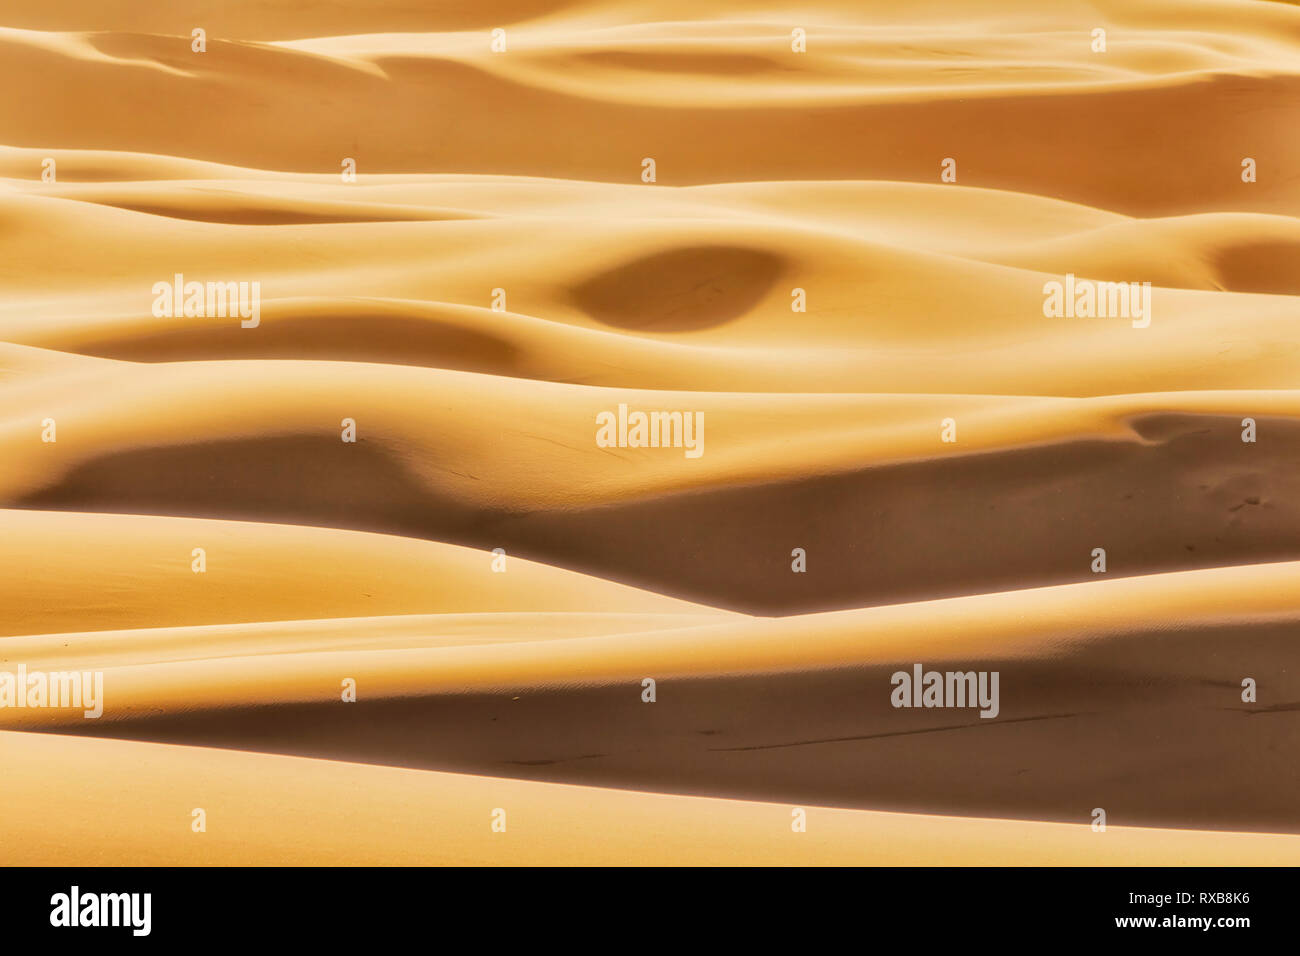 Formas simples formadas por la luz del sol y sombras sobre infinitas olas de dunas de arena en el árido desierto sin vida de Australian Pacific coast en Stockton Beach. Foto de stock